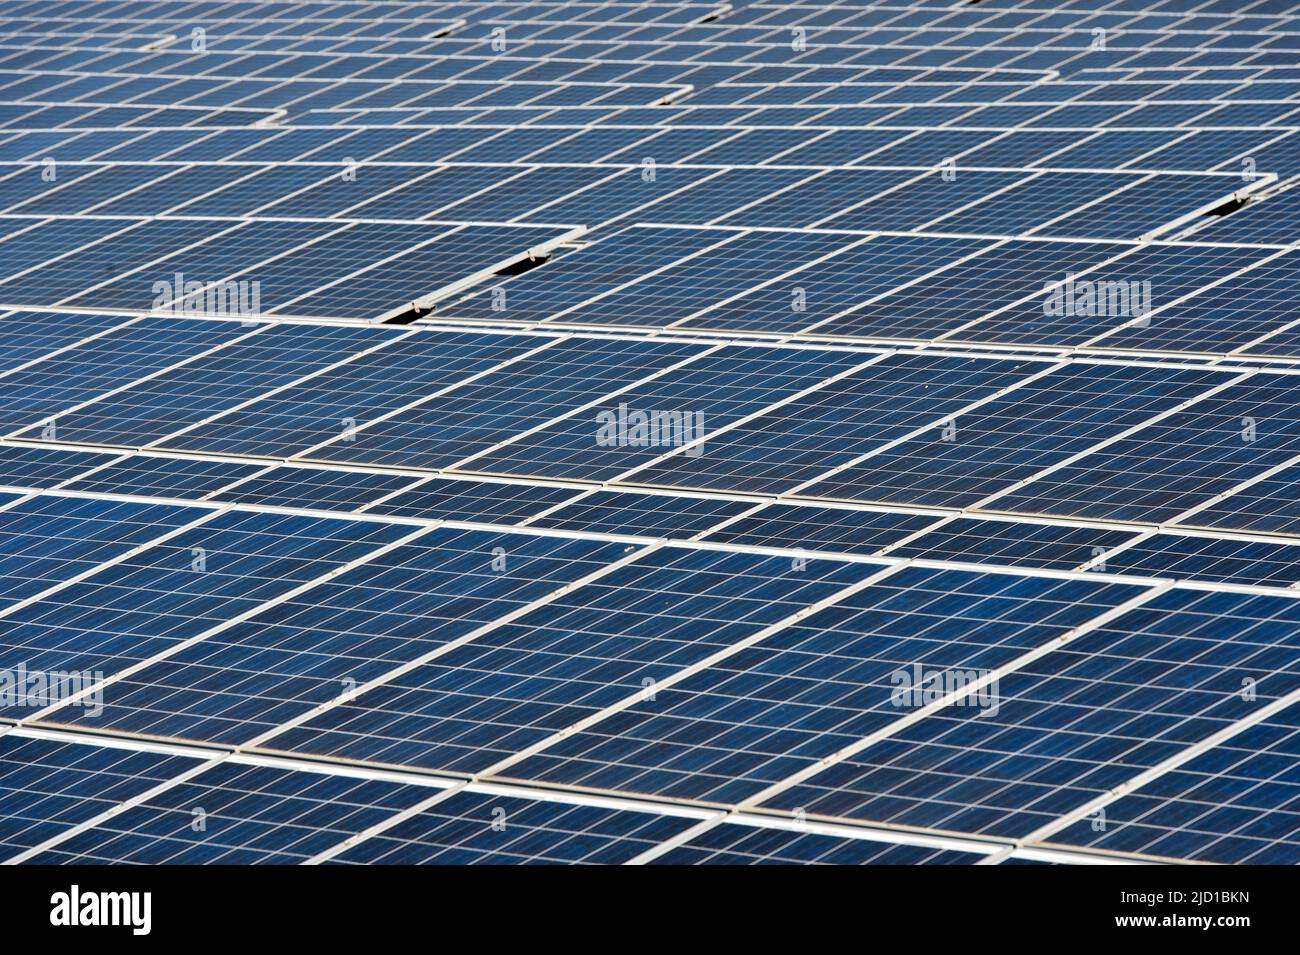 Solar panel in the Vogtsburg solar park, Vogtsburg, Kaiserstuhl, Baden-Württemberg, Germany Stock Photo